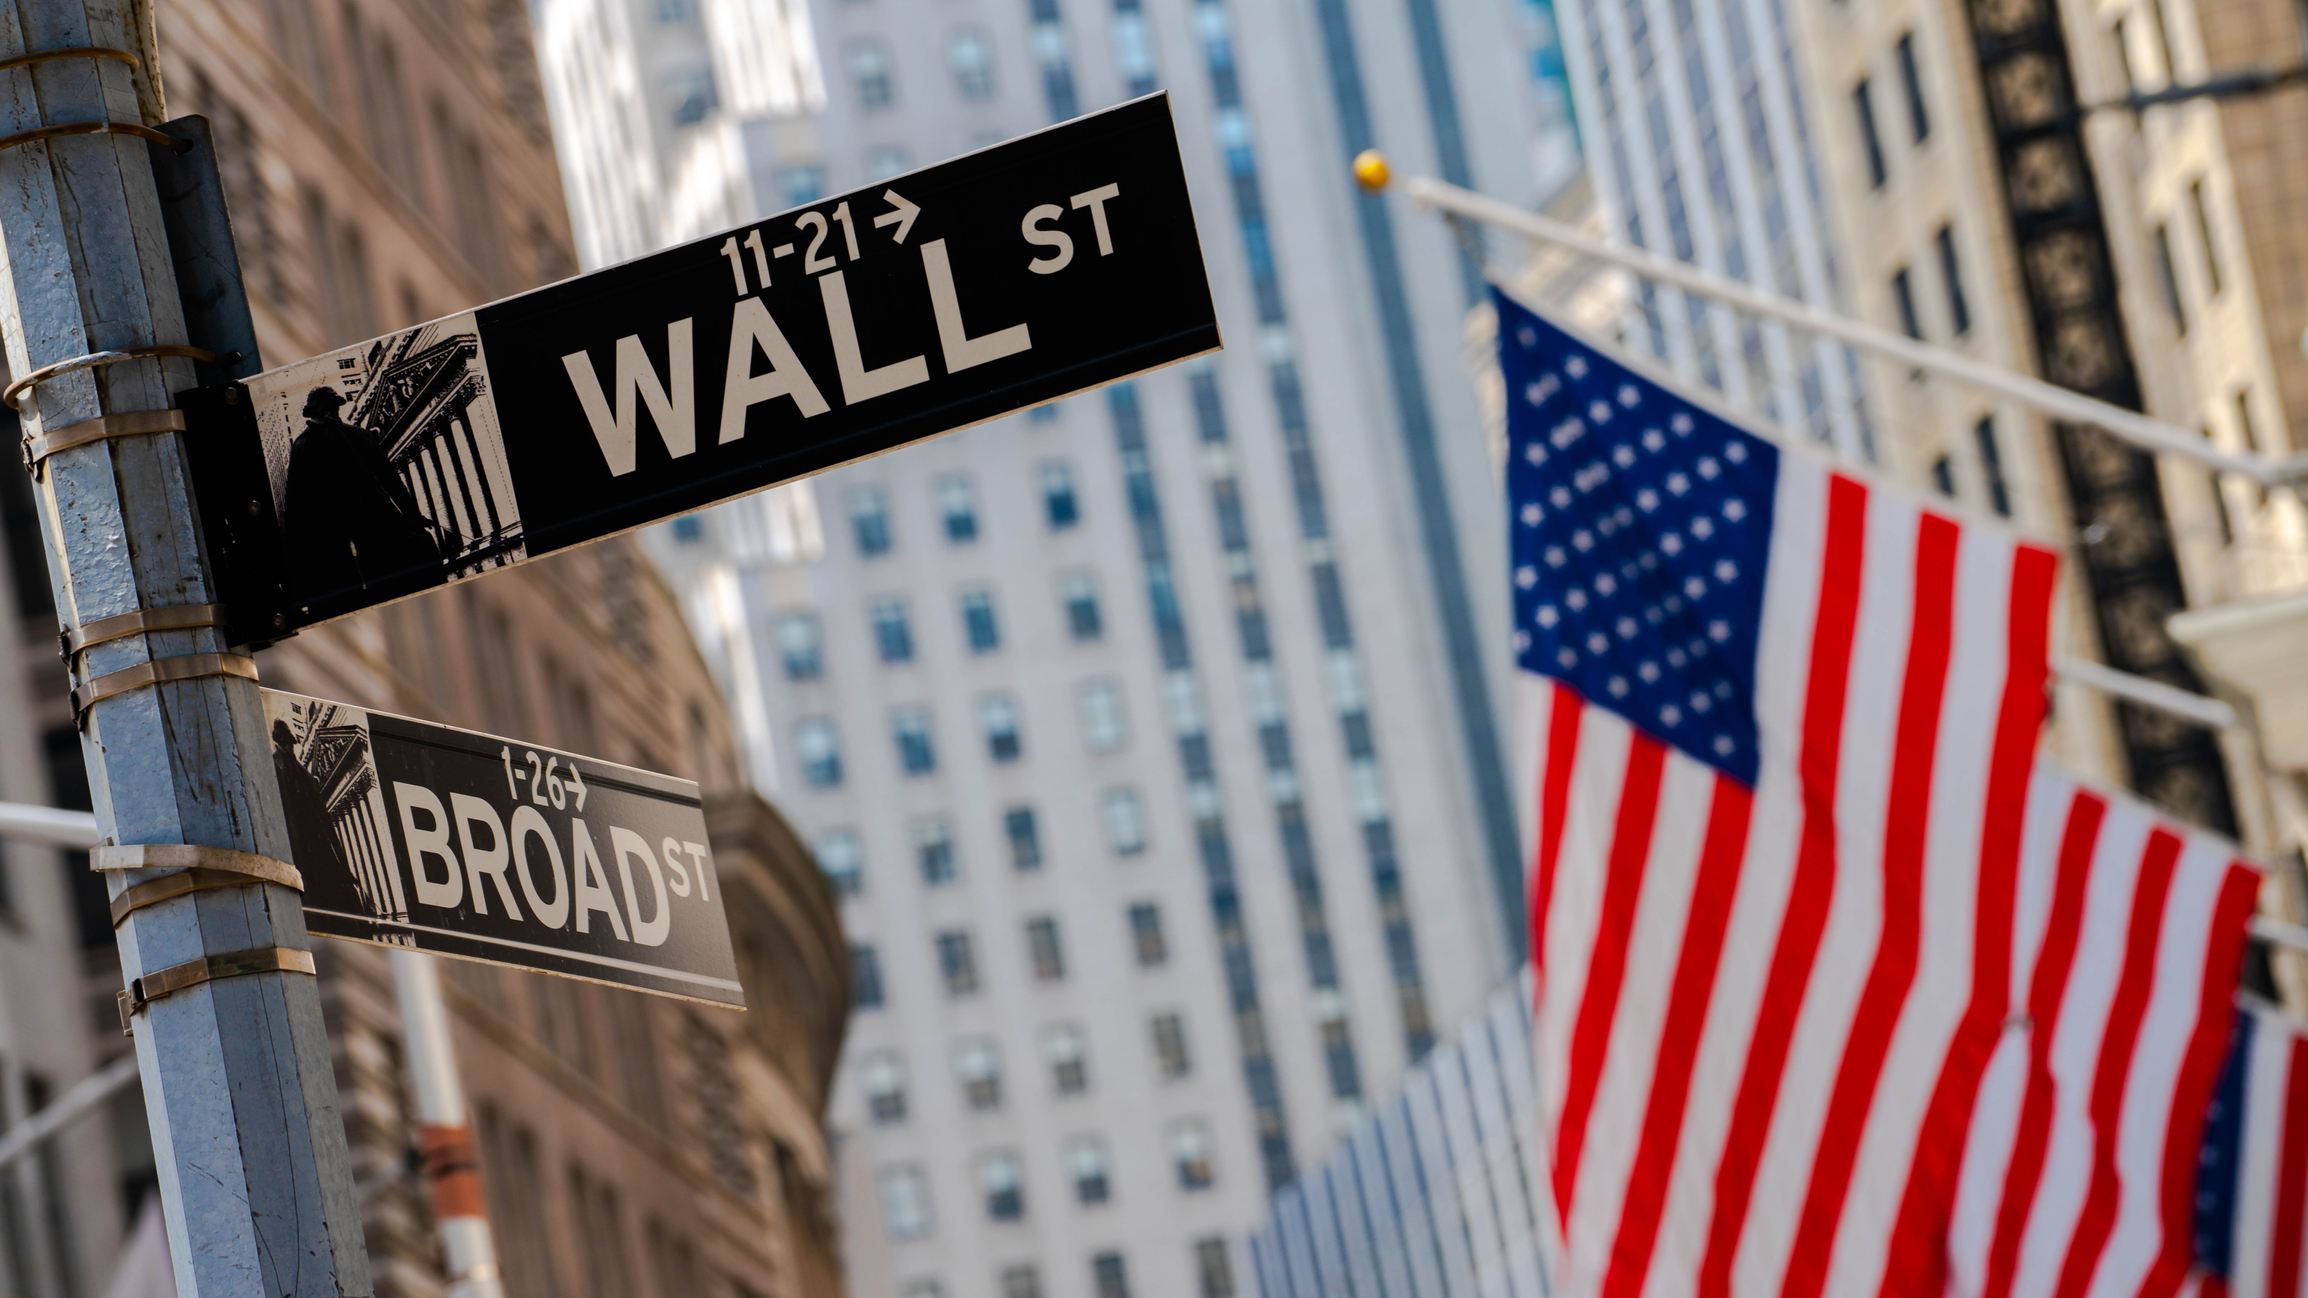 financialounge -  frank thormann robert kaynor Schroders Wall Street